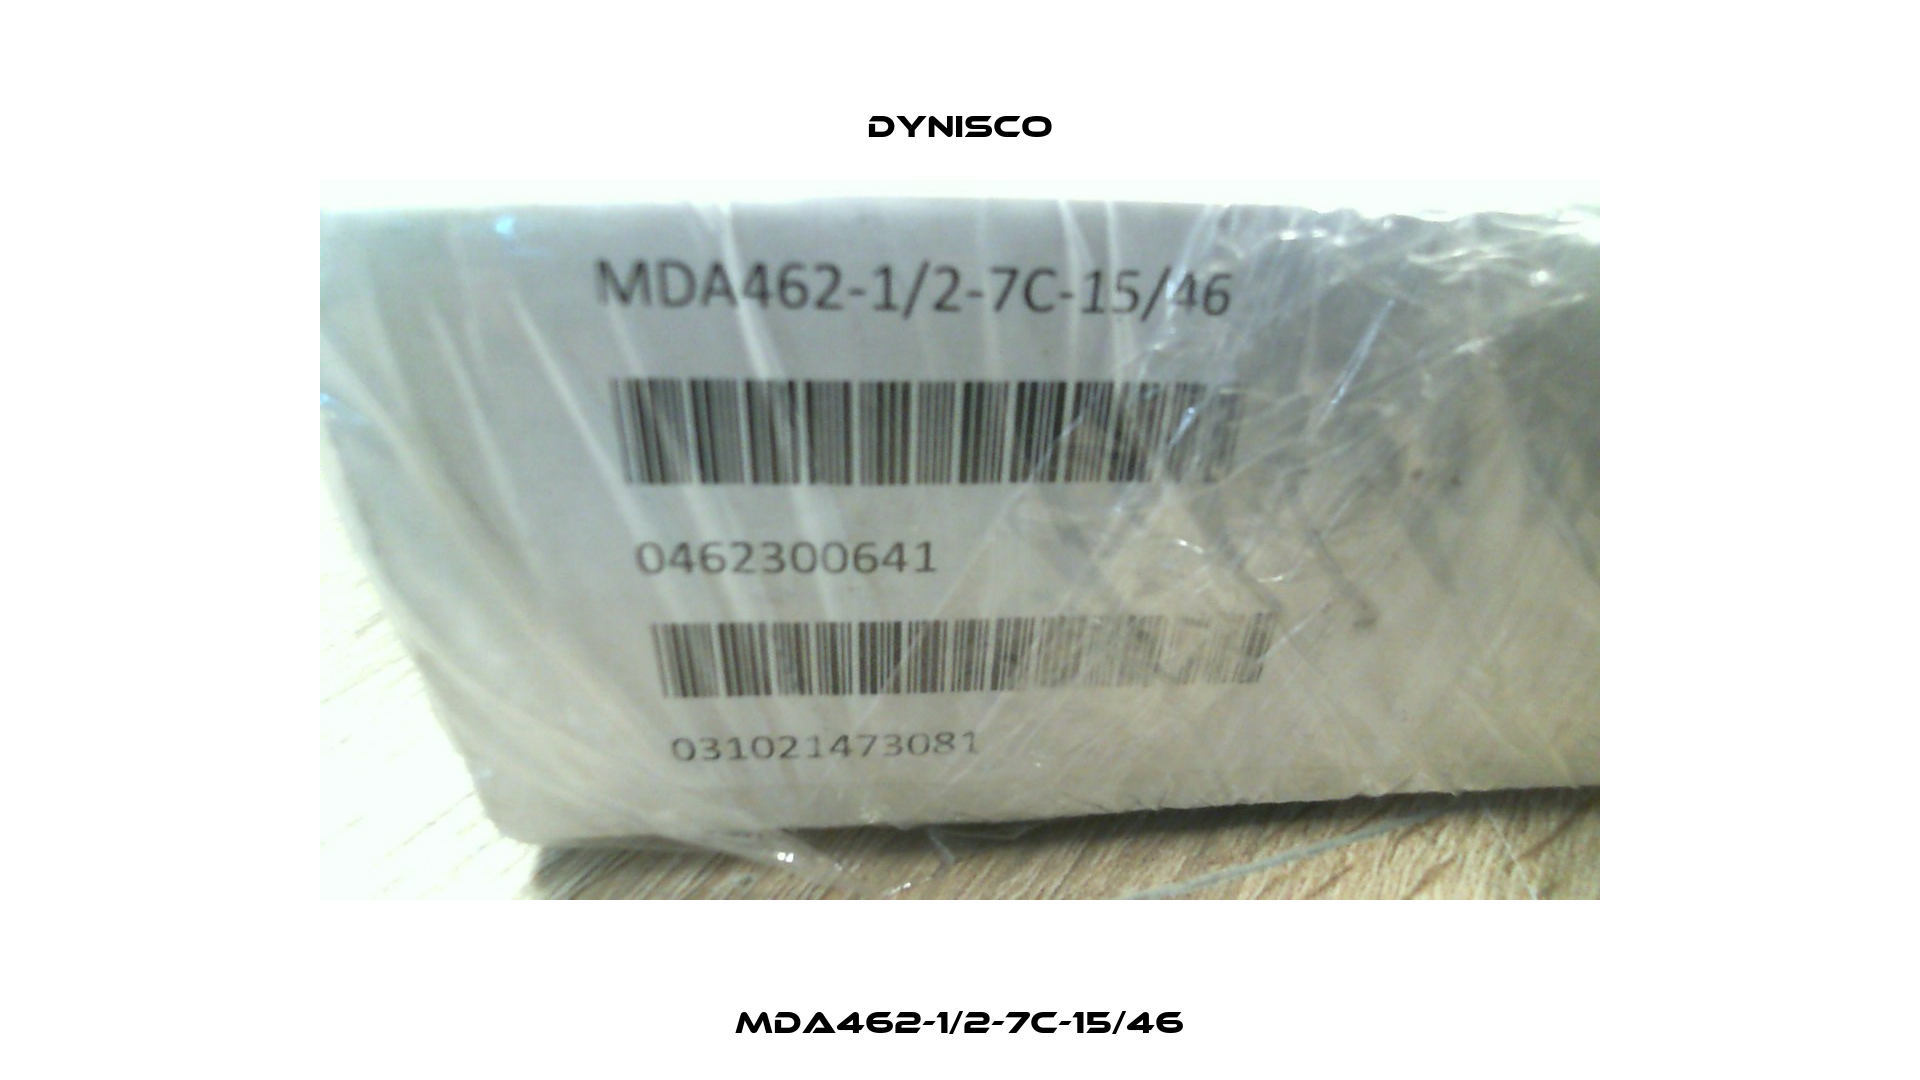 MDA462-1/2-7C-15/46 Dynisco